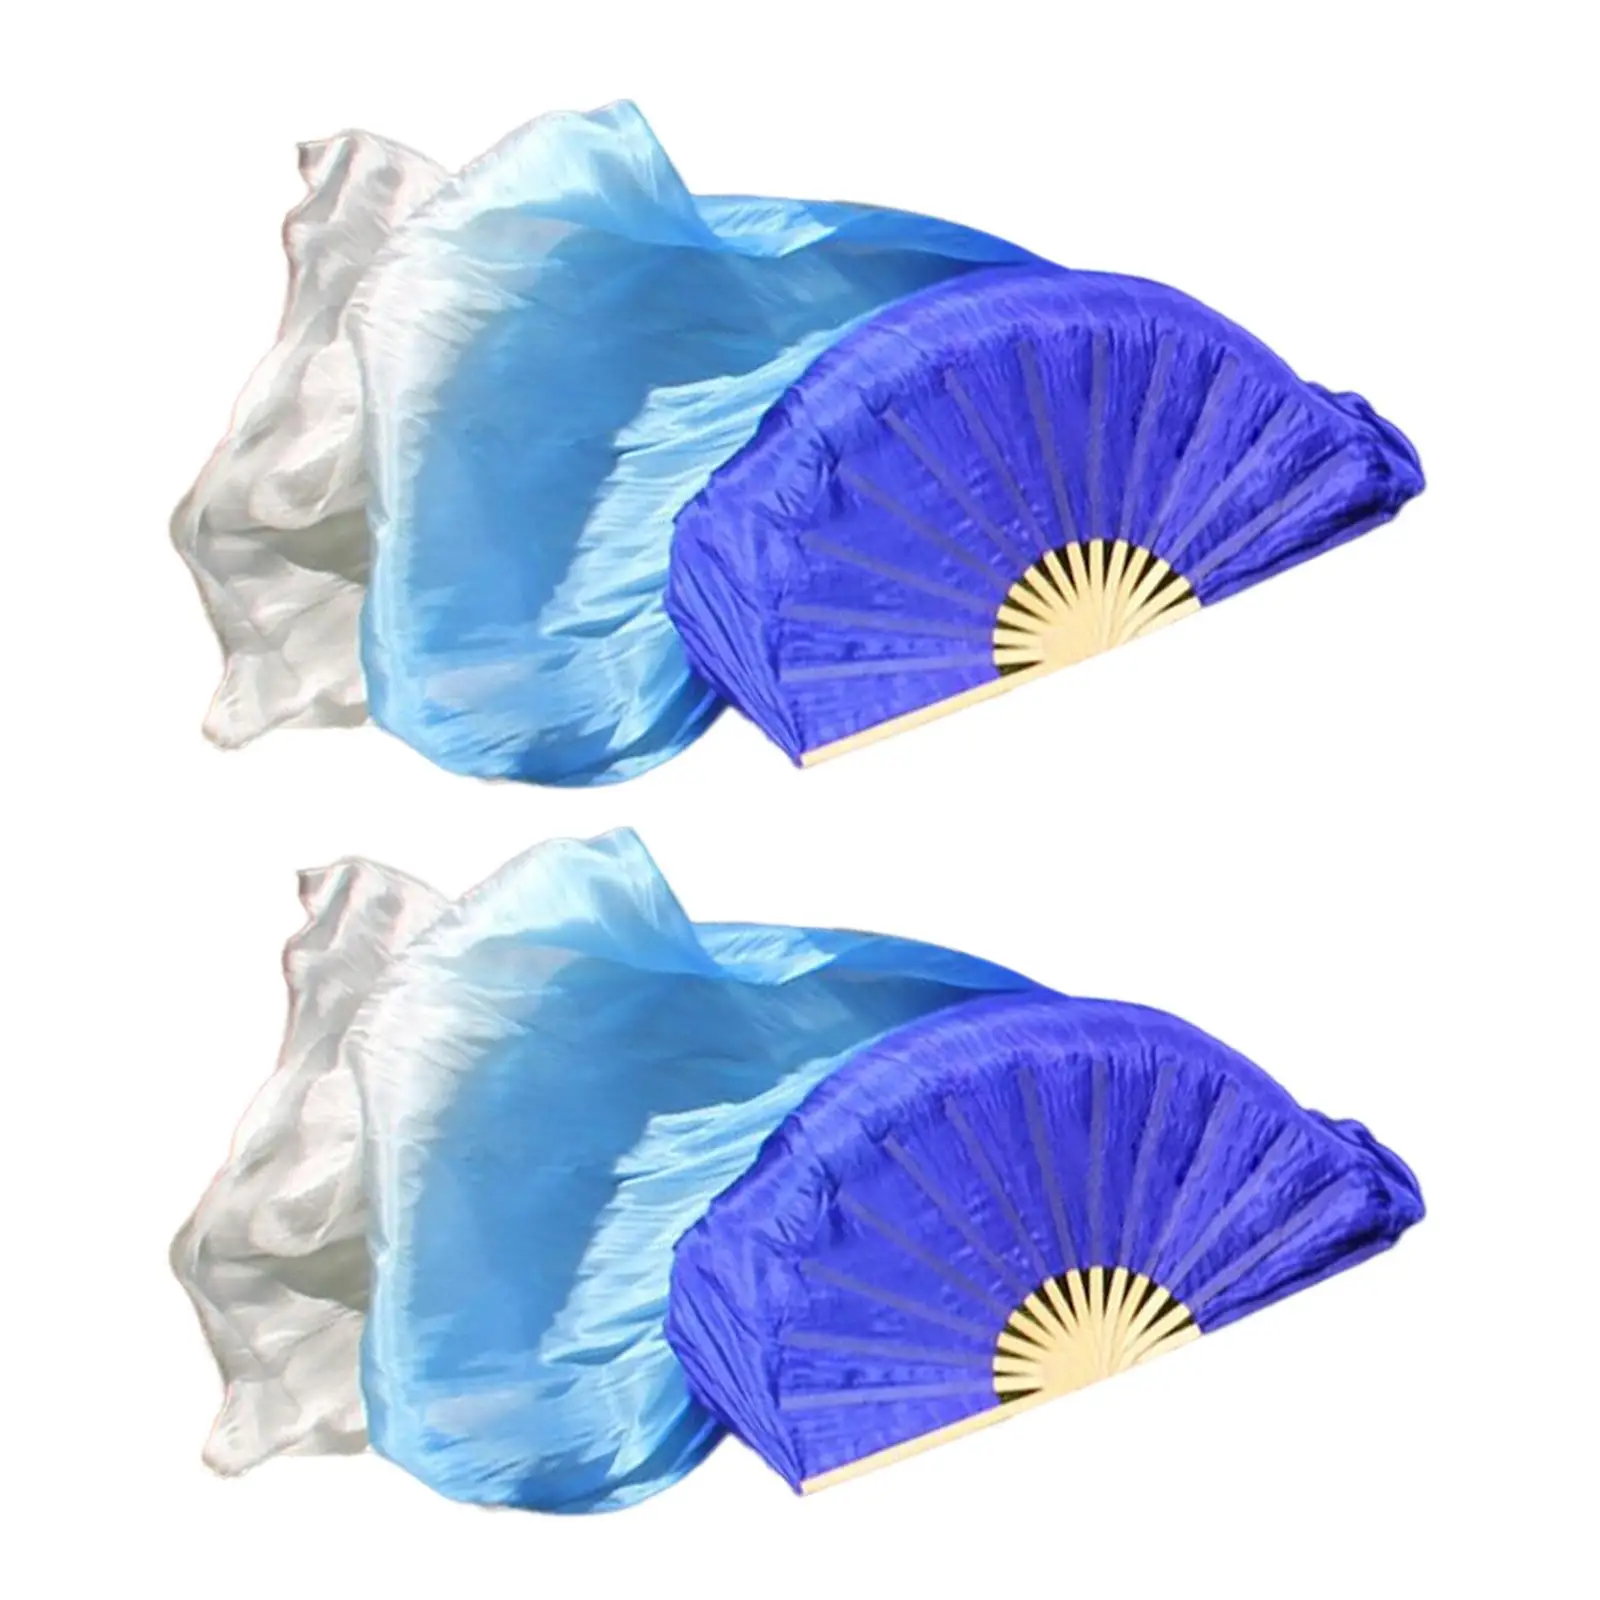 2Pcs Belly Dance Fan Veils Dyed Silk Fan Length 180cm Handmade Flow Fans Foldable Fan for Lady Costume Accessories Performance